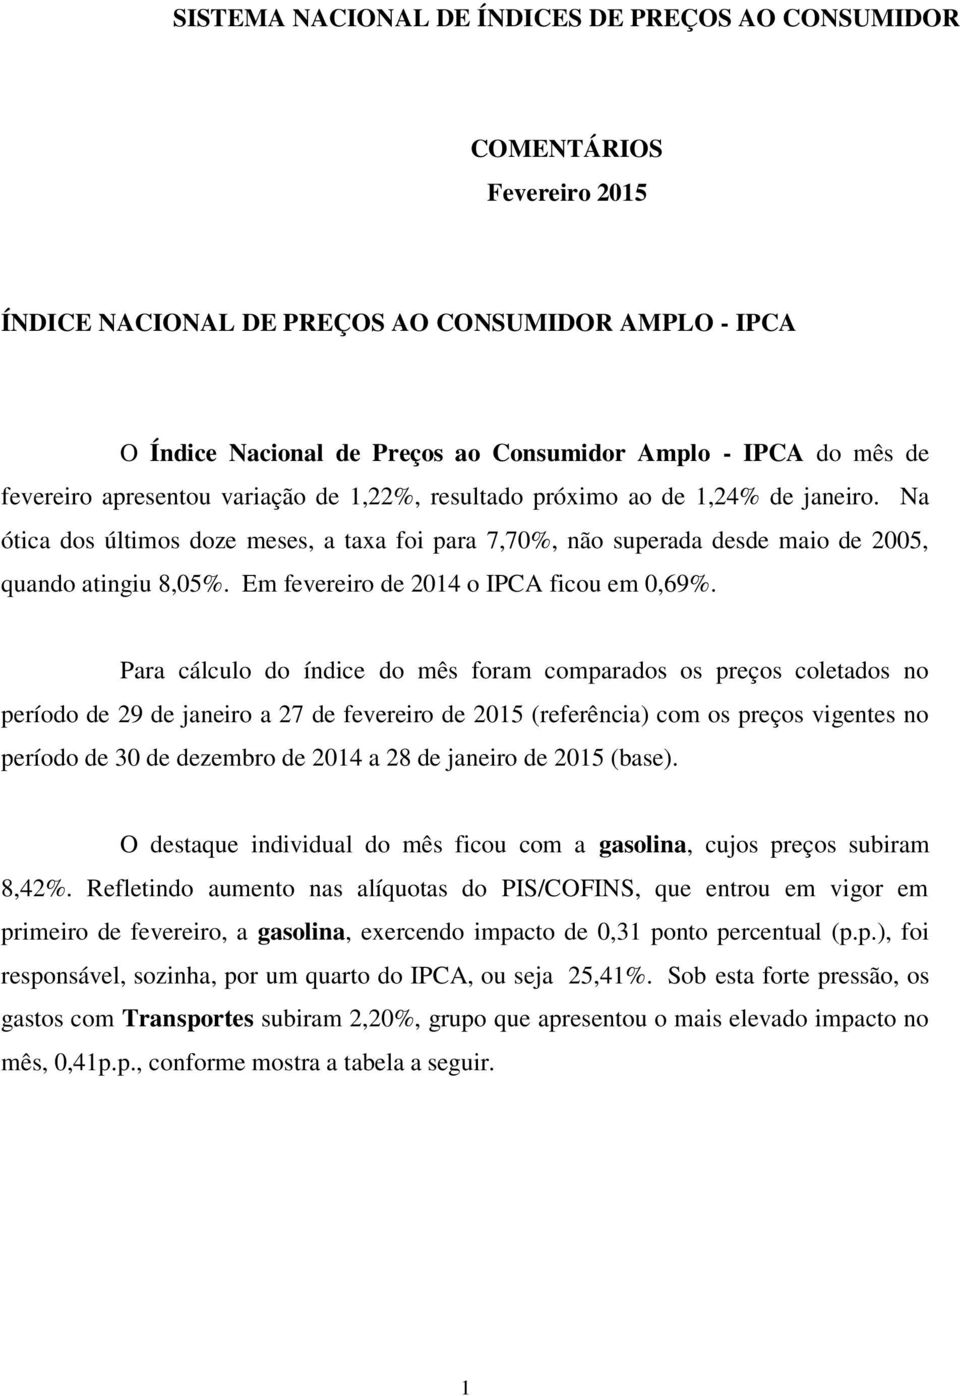 Em fevereiro de 2014 o IPCA ficou em 0,69%.